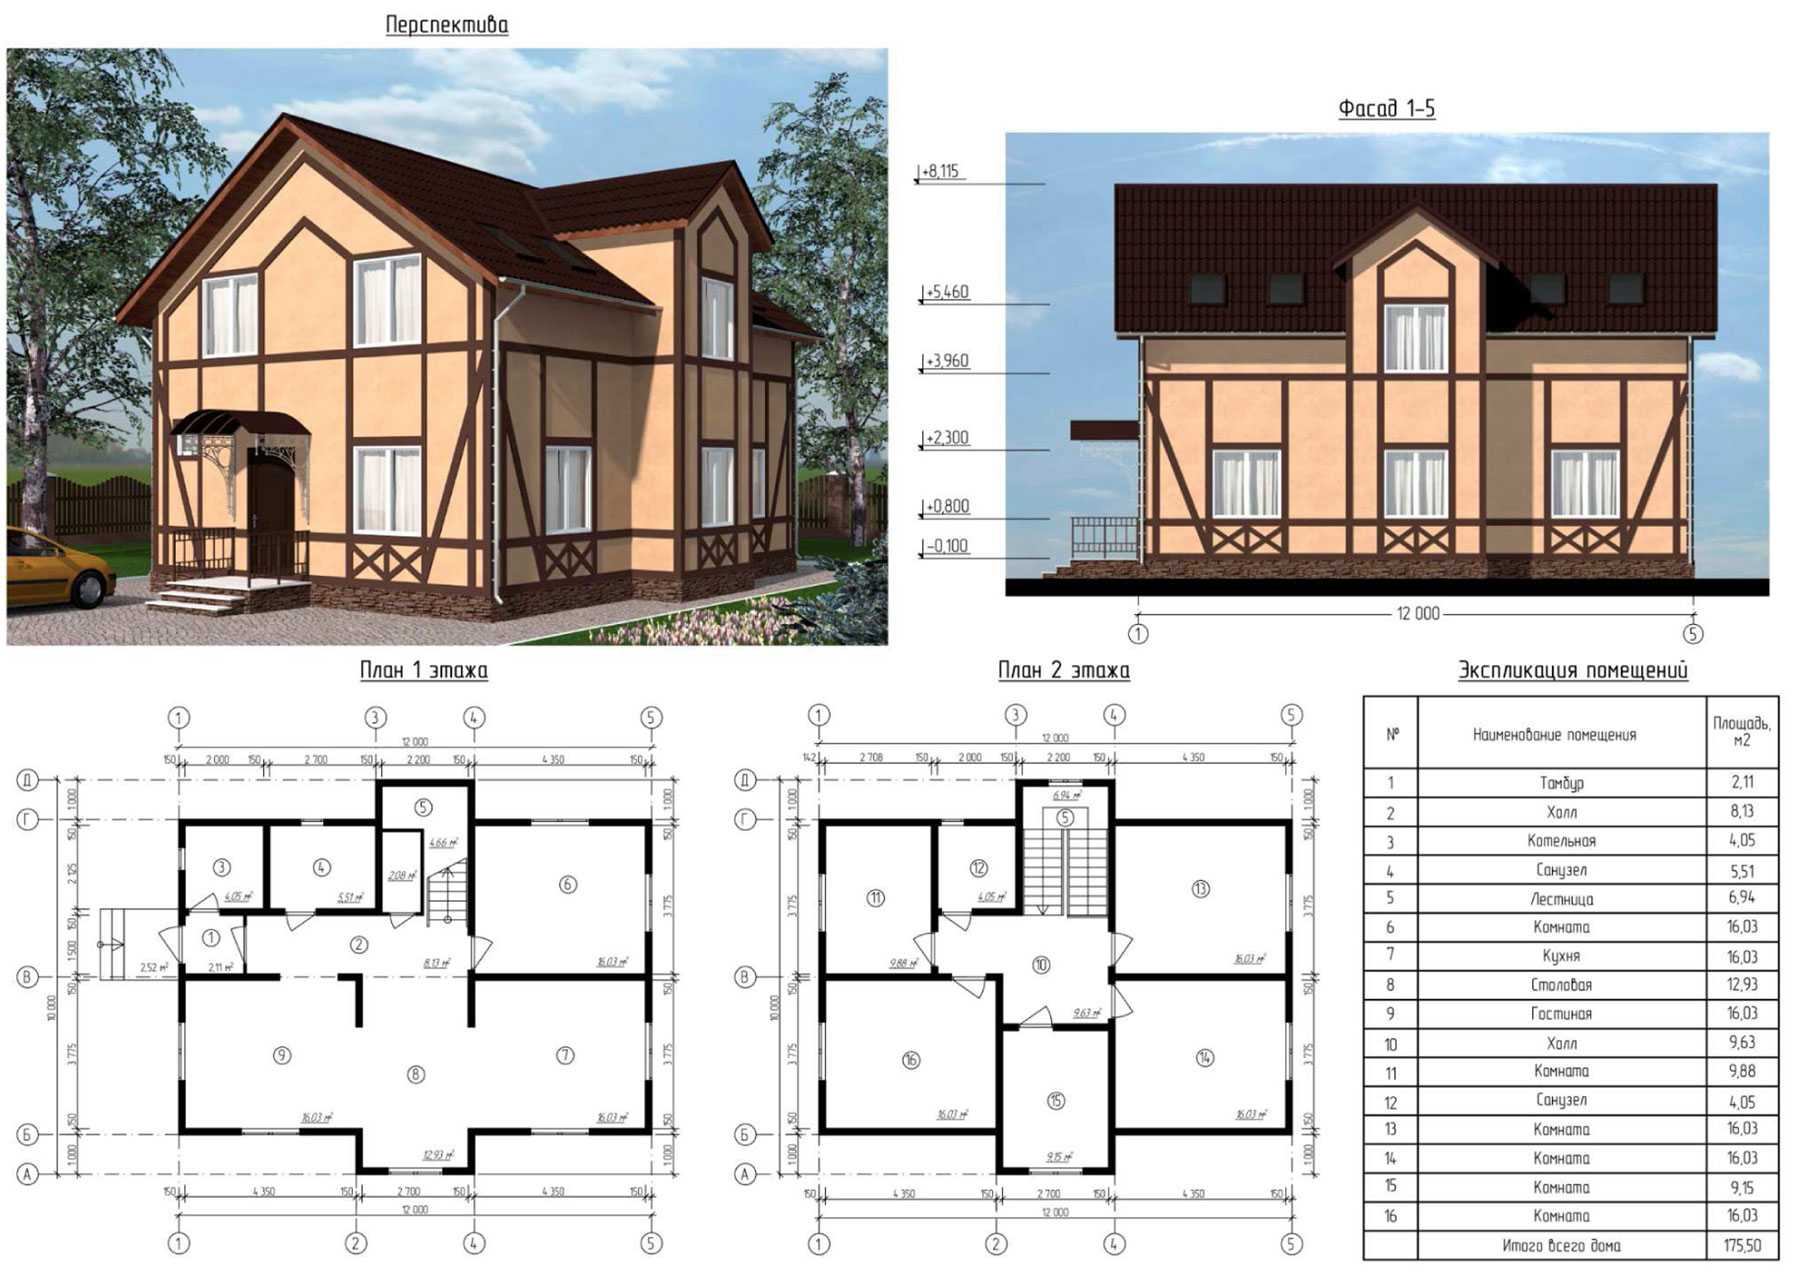 Проект дома 9 на 9 метров — чертежи, планировки, современный дизайн (120 фото). одно и двухэтажные варианты!